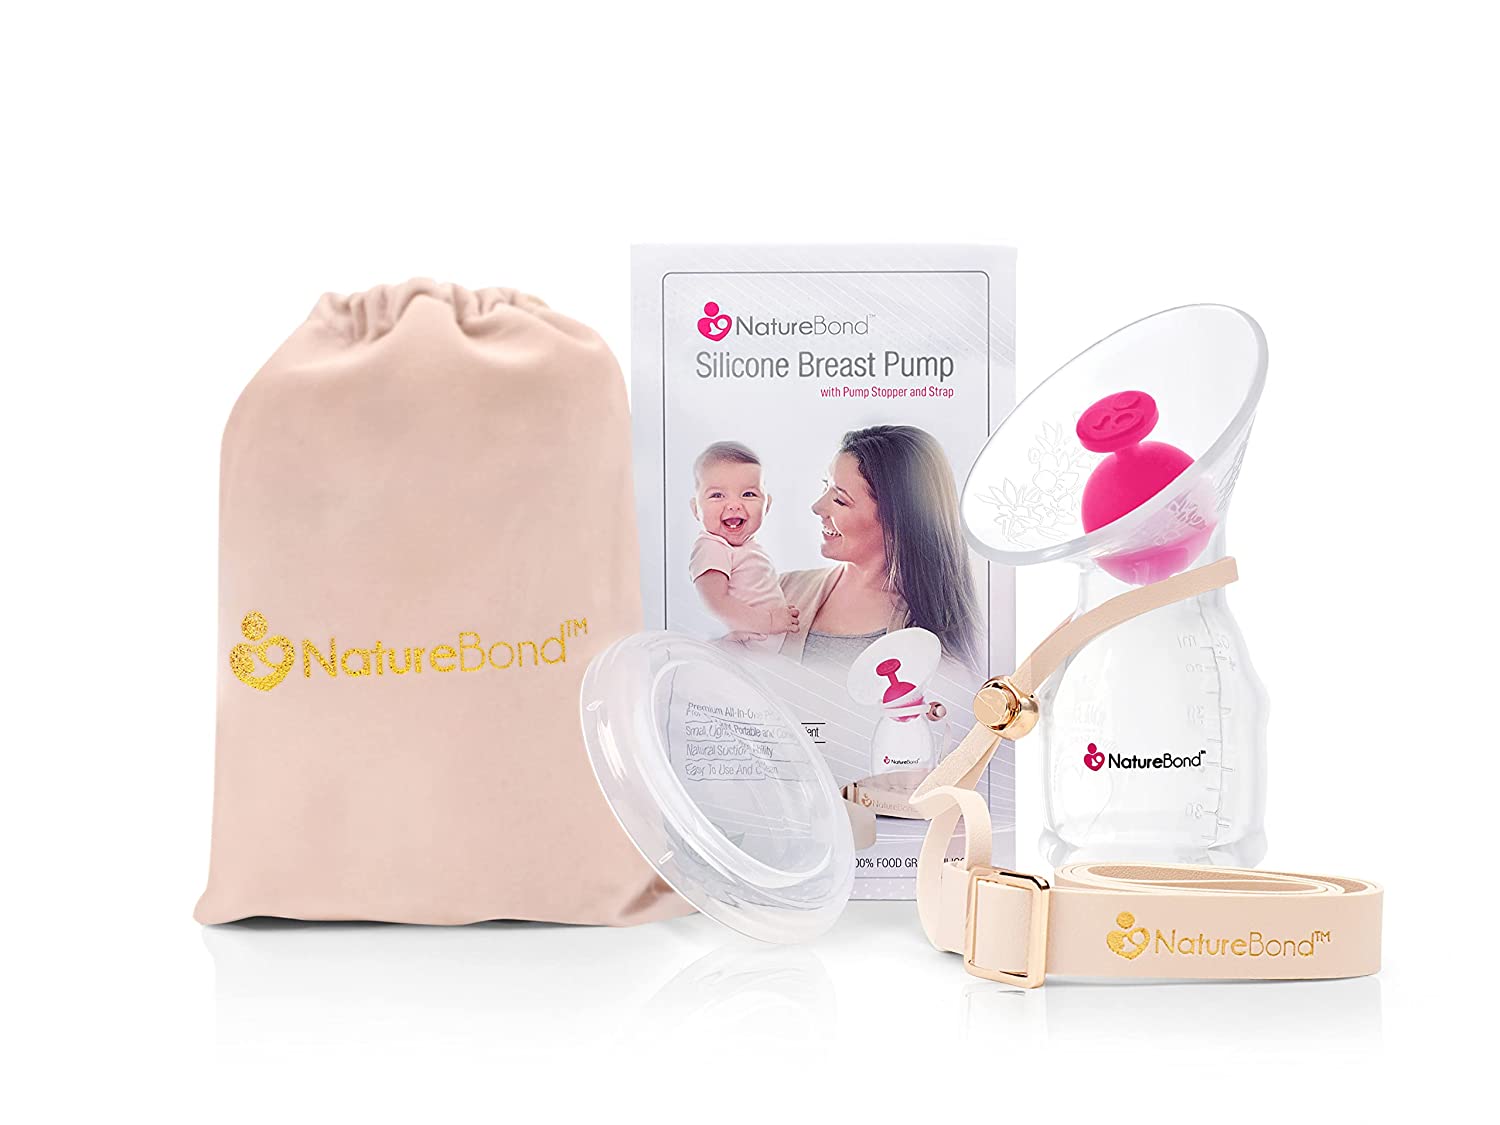 NatureBond Silicone Breast Pump